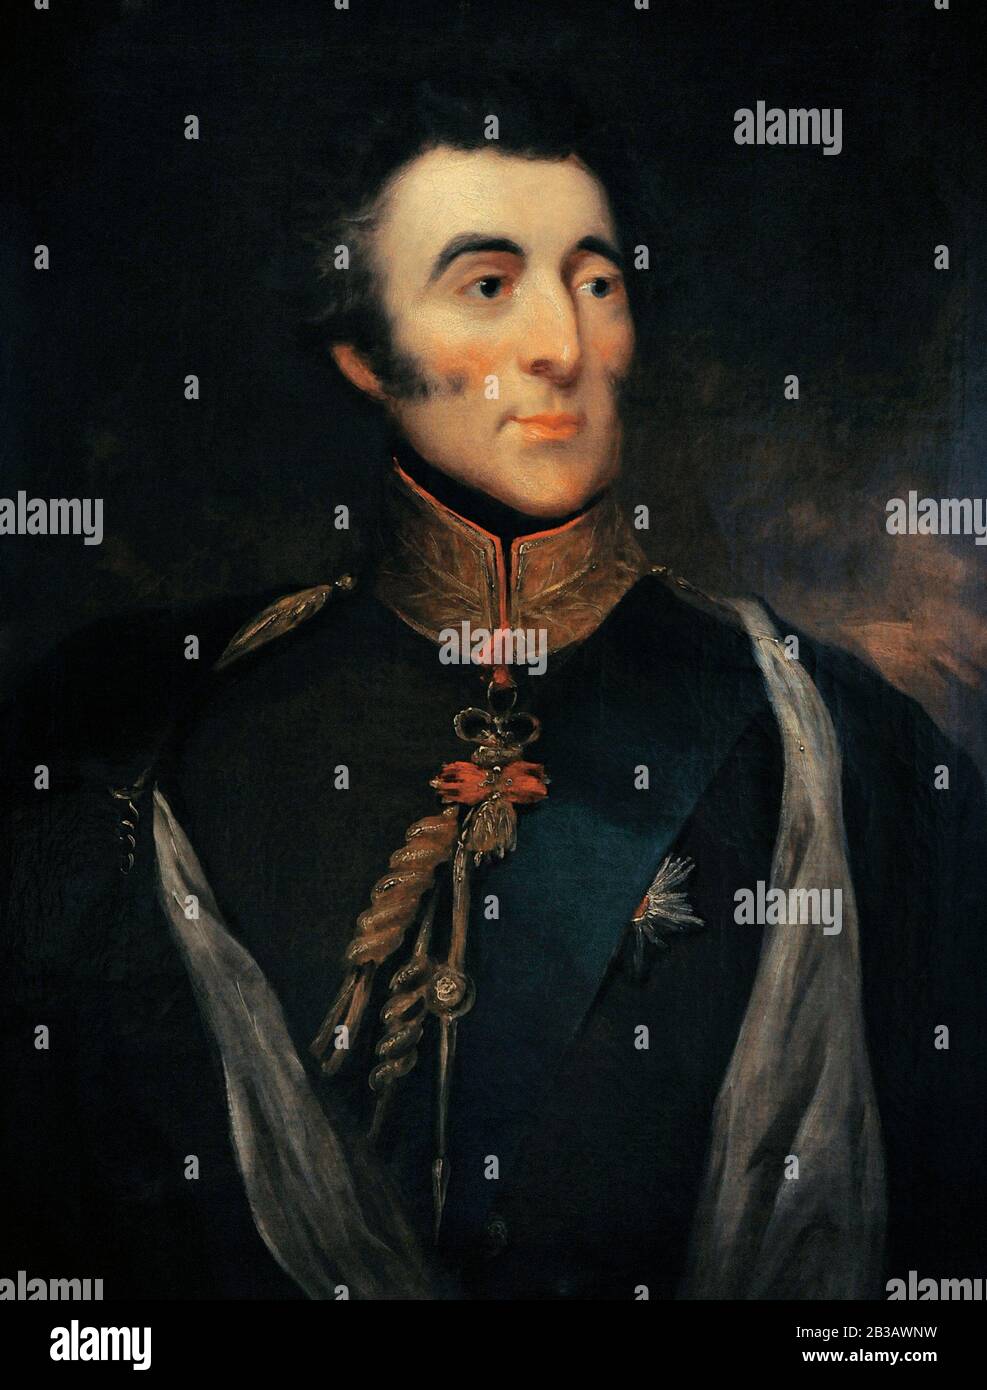 Arthur Wellesley (1769-1852). 1 º Duque de Wellington. Ejército británico y primer Ministro. Retrato atribuido a John Jackson (1778-1831), CA.1820-1825. Museo Lázaro Galdiano. Madrid. España. Foto de stock